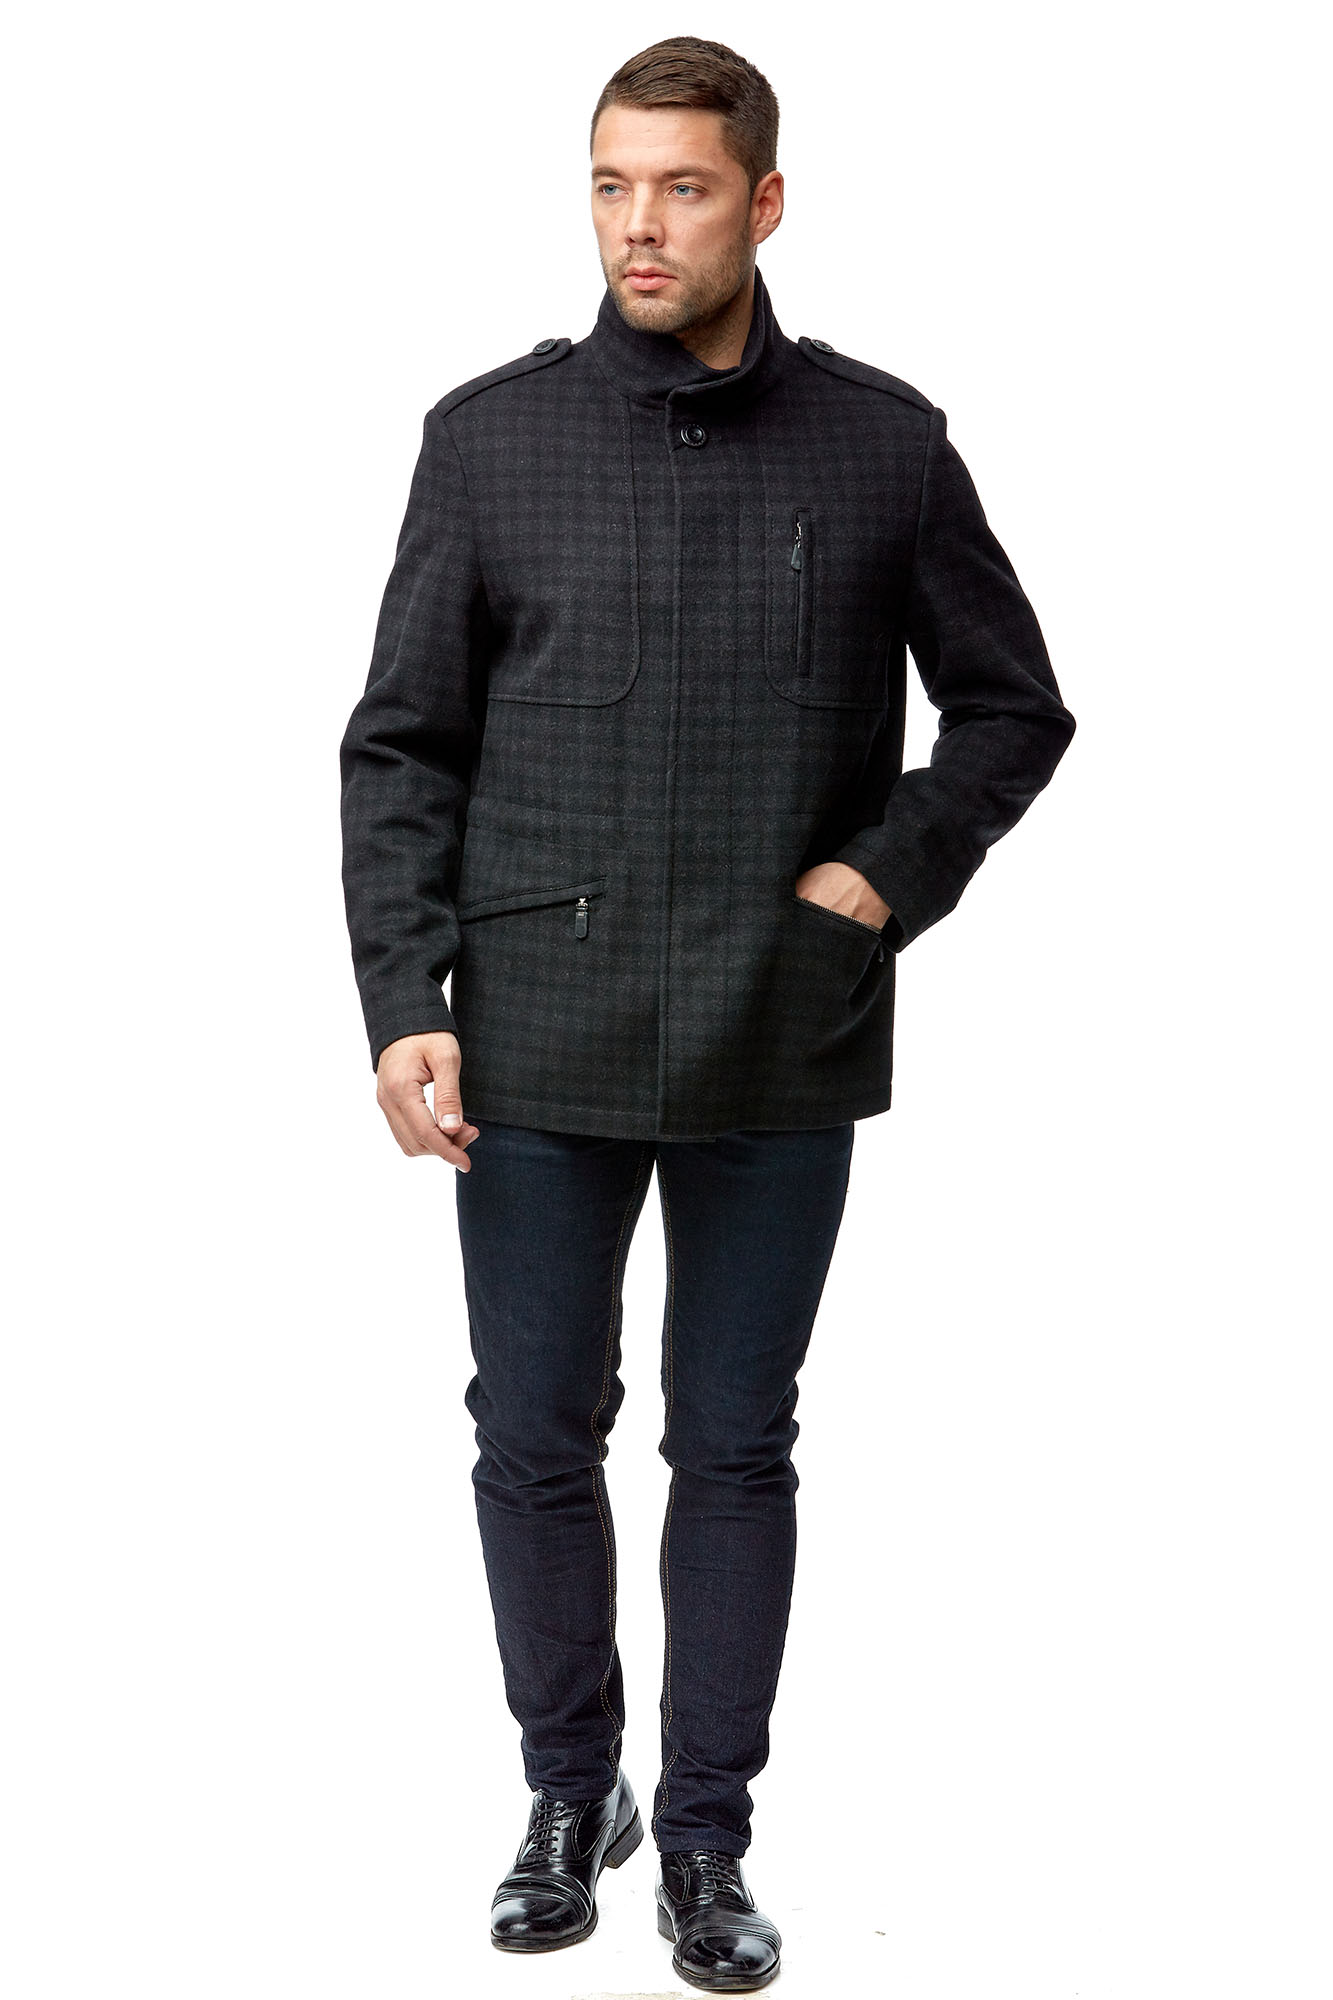 Мужское пальто из текстиля с воротником 8001797-2